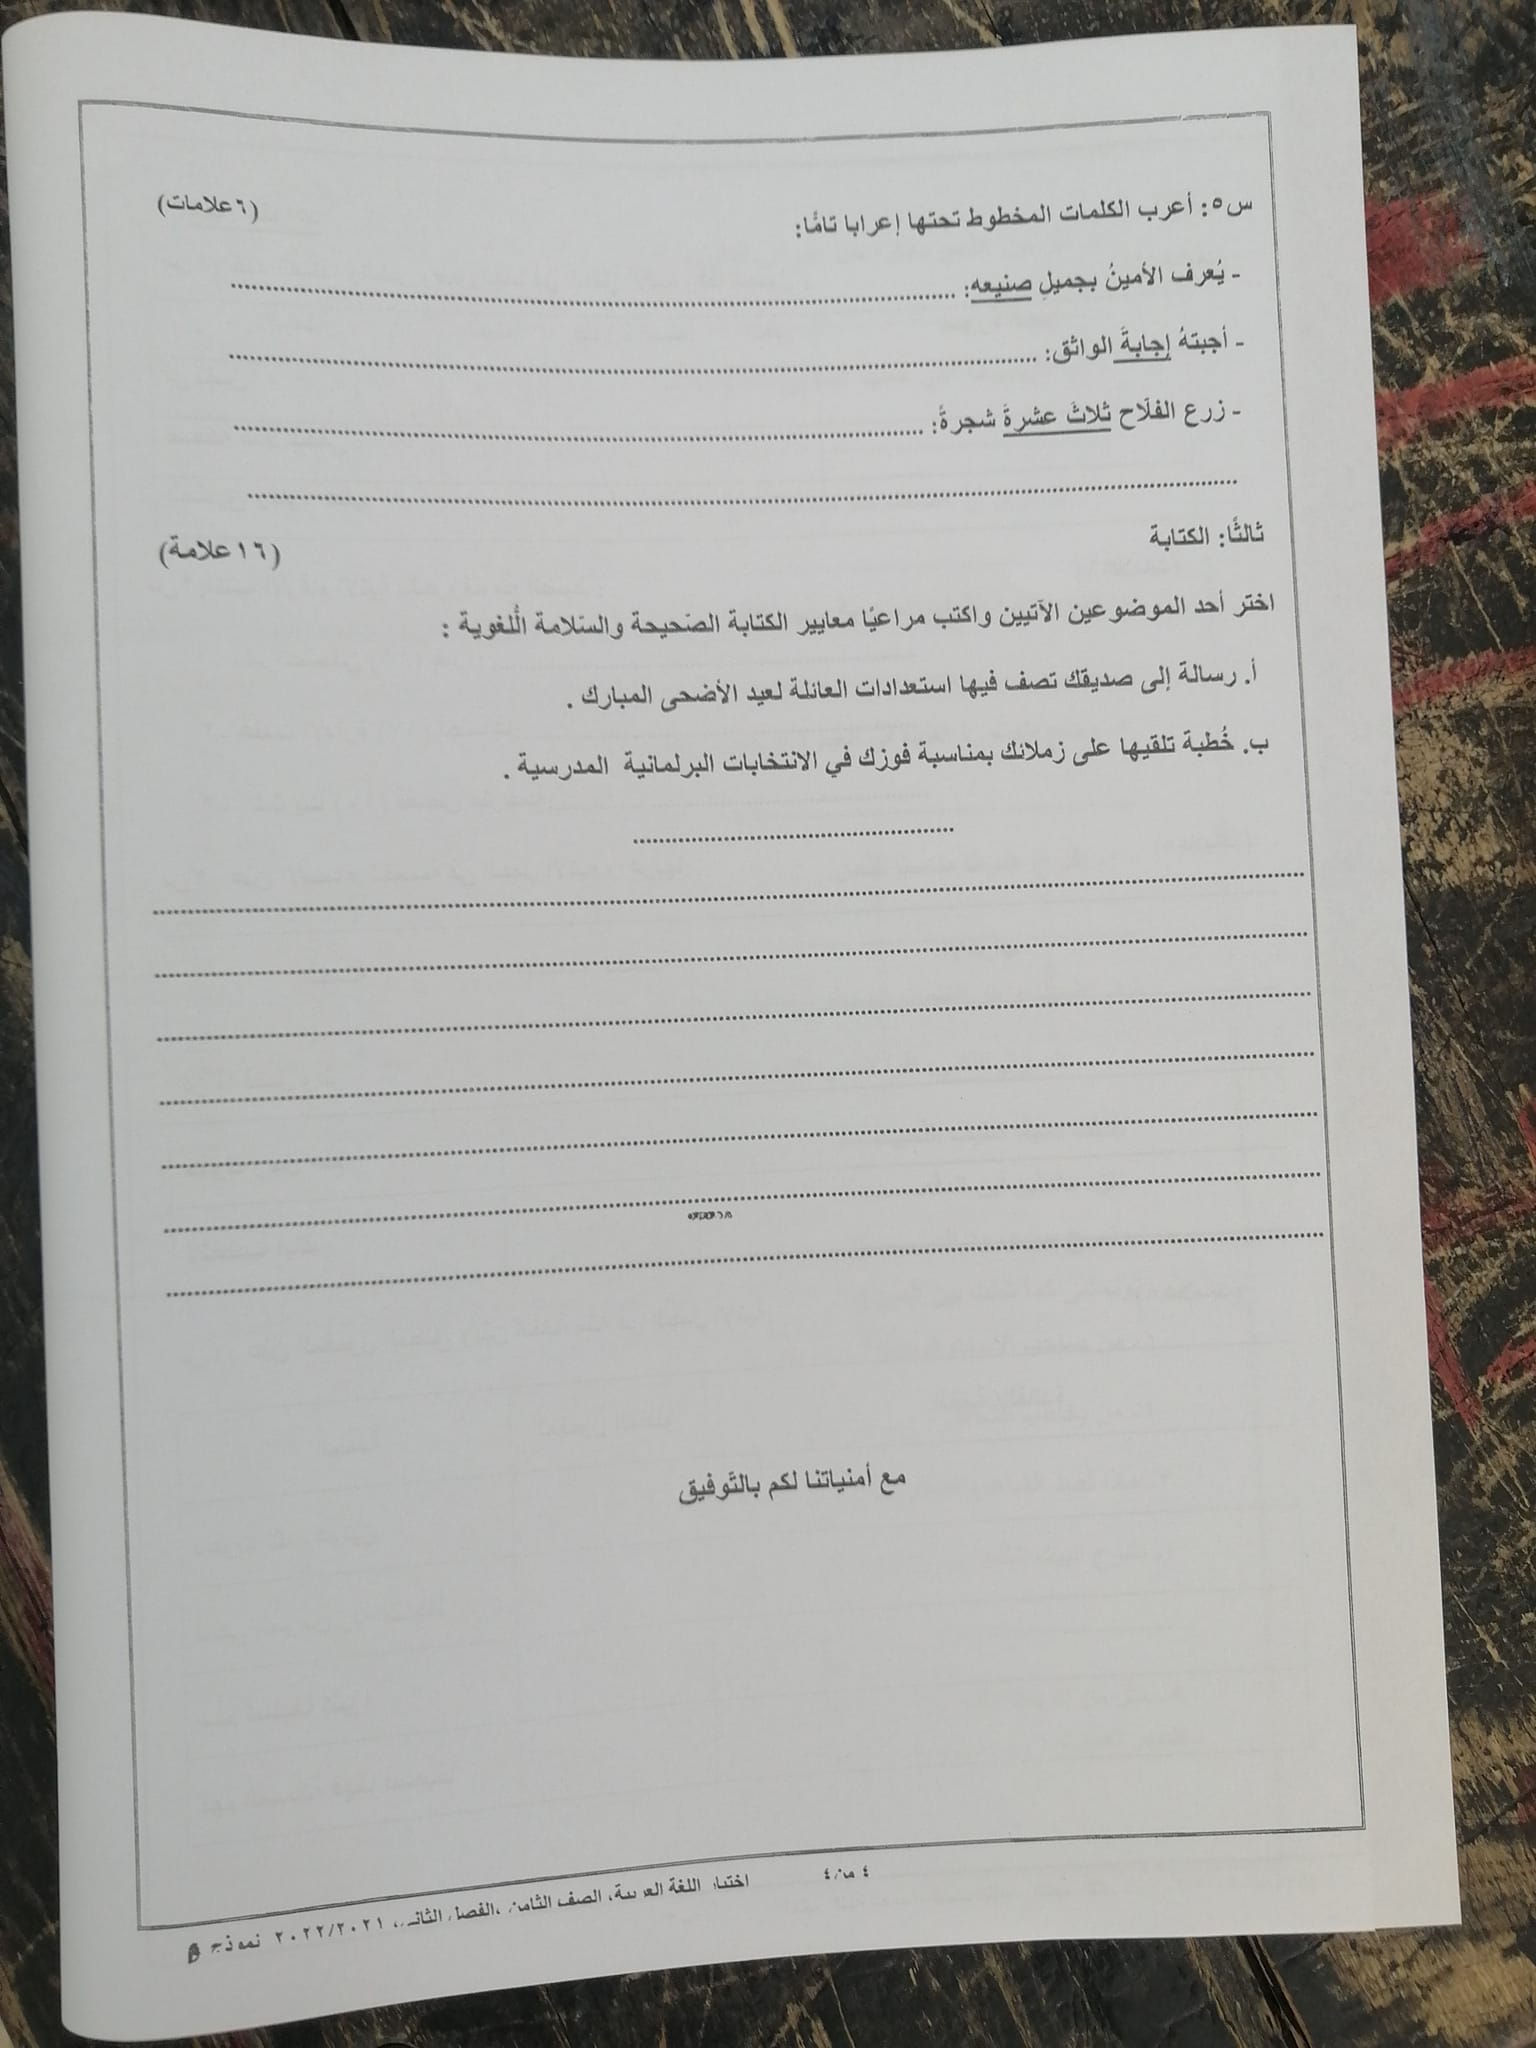 4 صور امتحان نهائي اللغة العربية للصف الثامن الفصل الثاني 2022 نموذج B وكالة.jpg